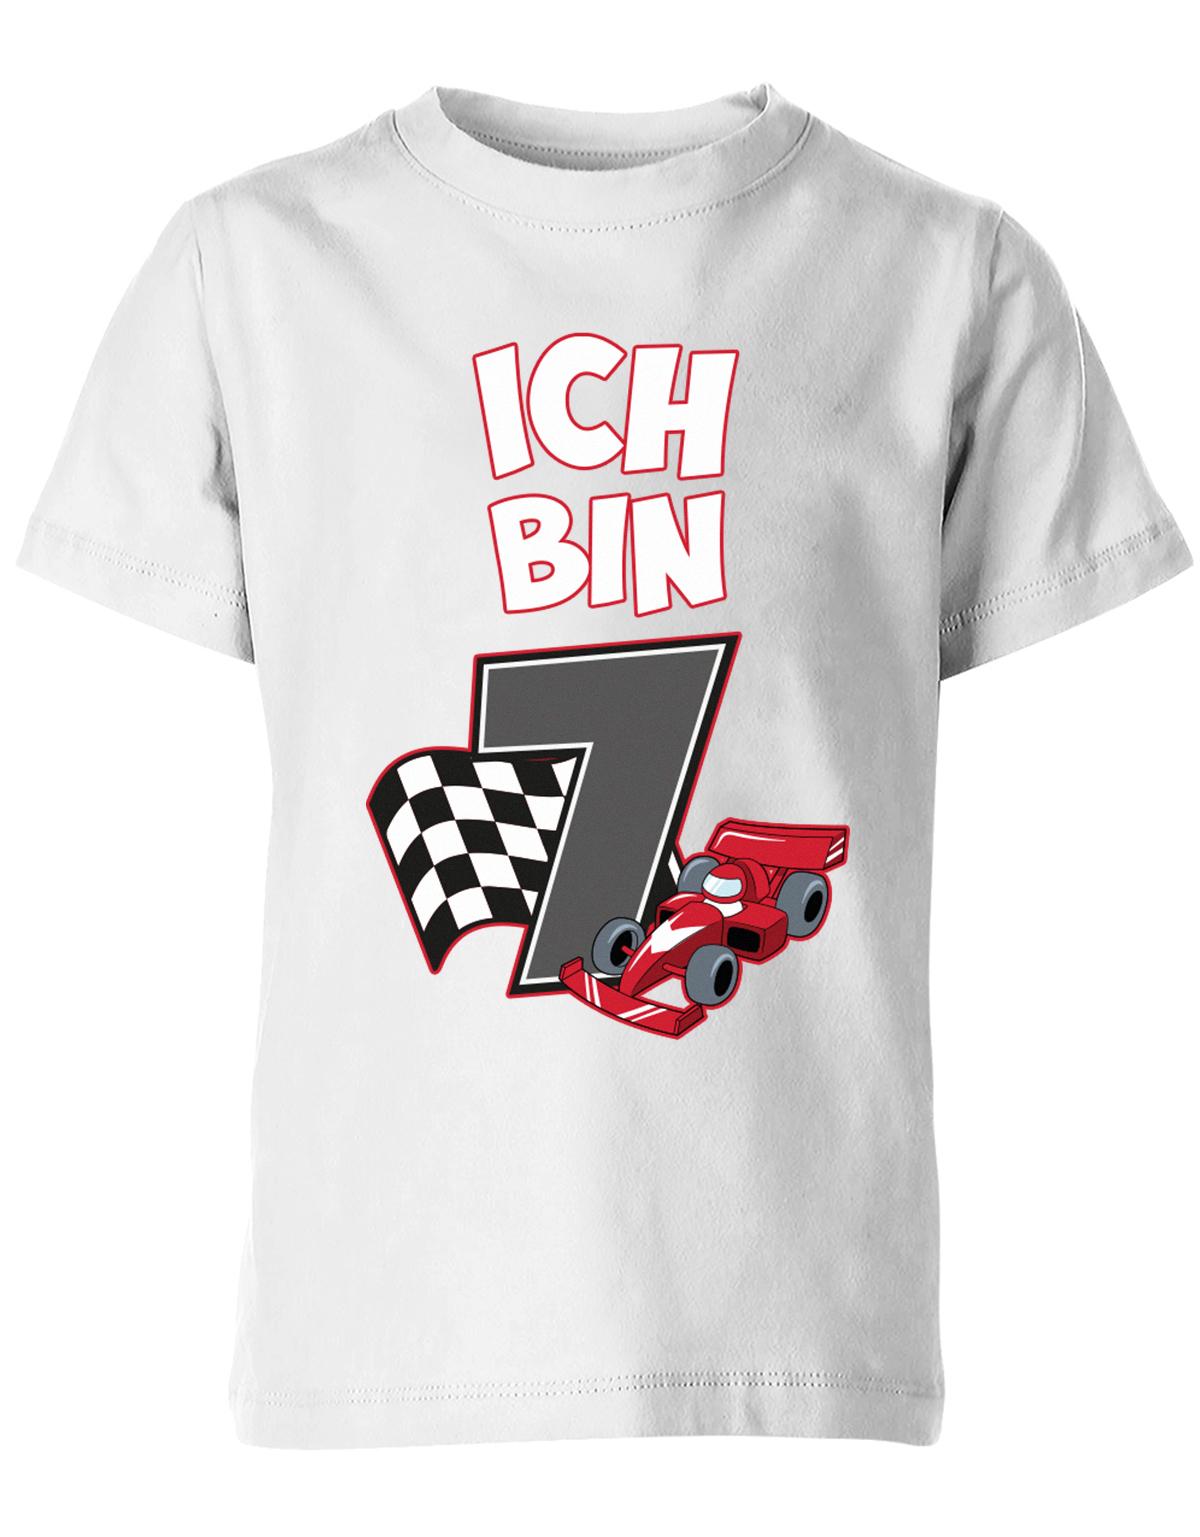 ich-bin-7-autorennen-rennwagen-geburtstag-rennfahrer-kinder-shirt-weiss